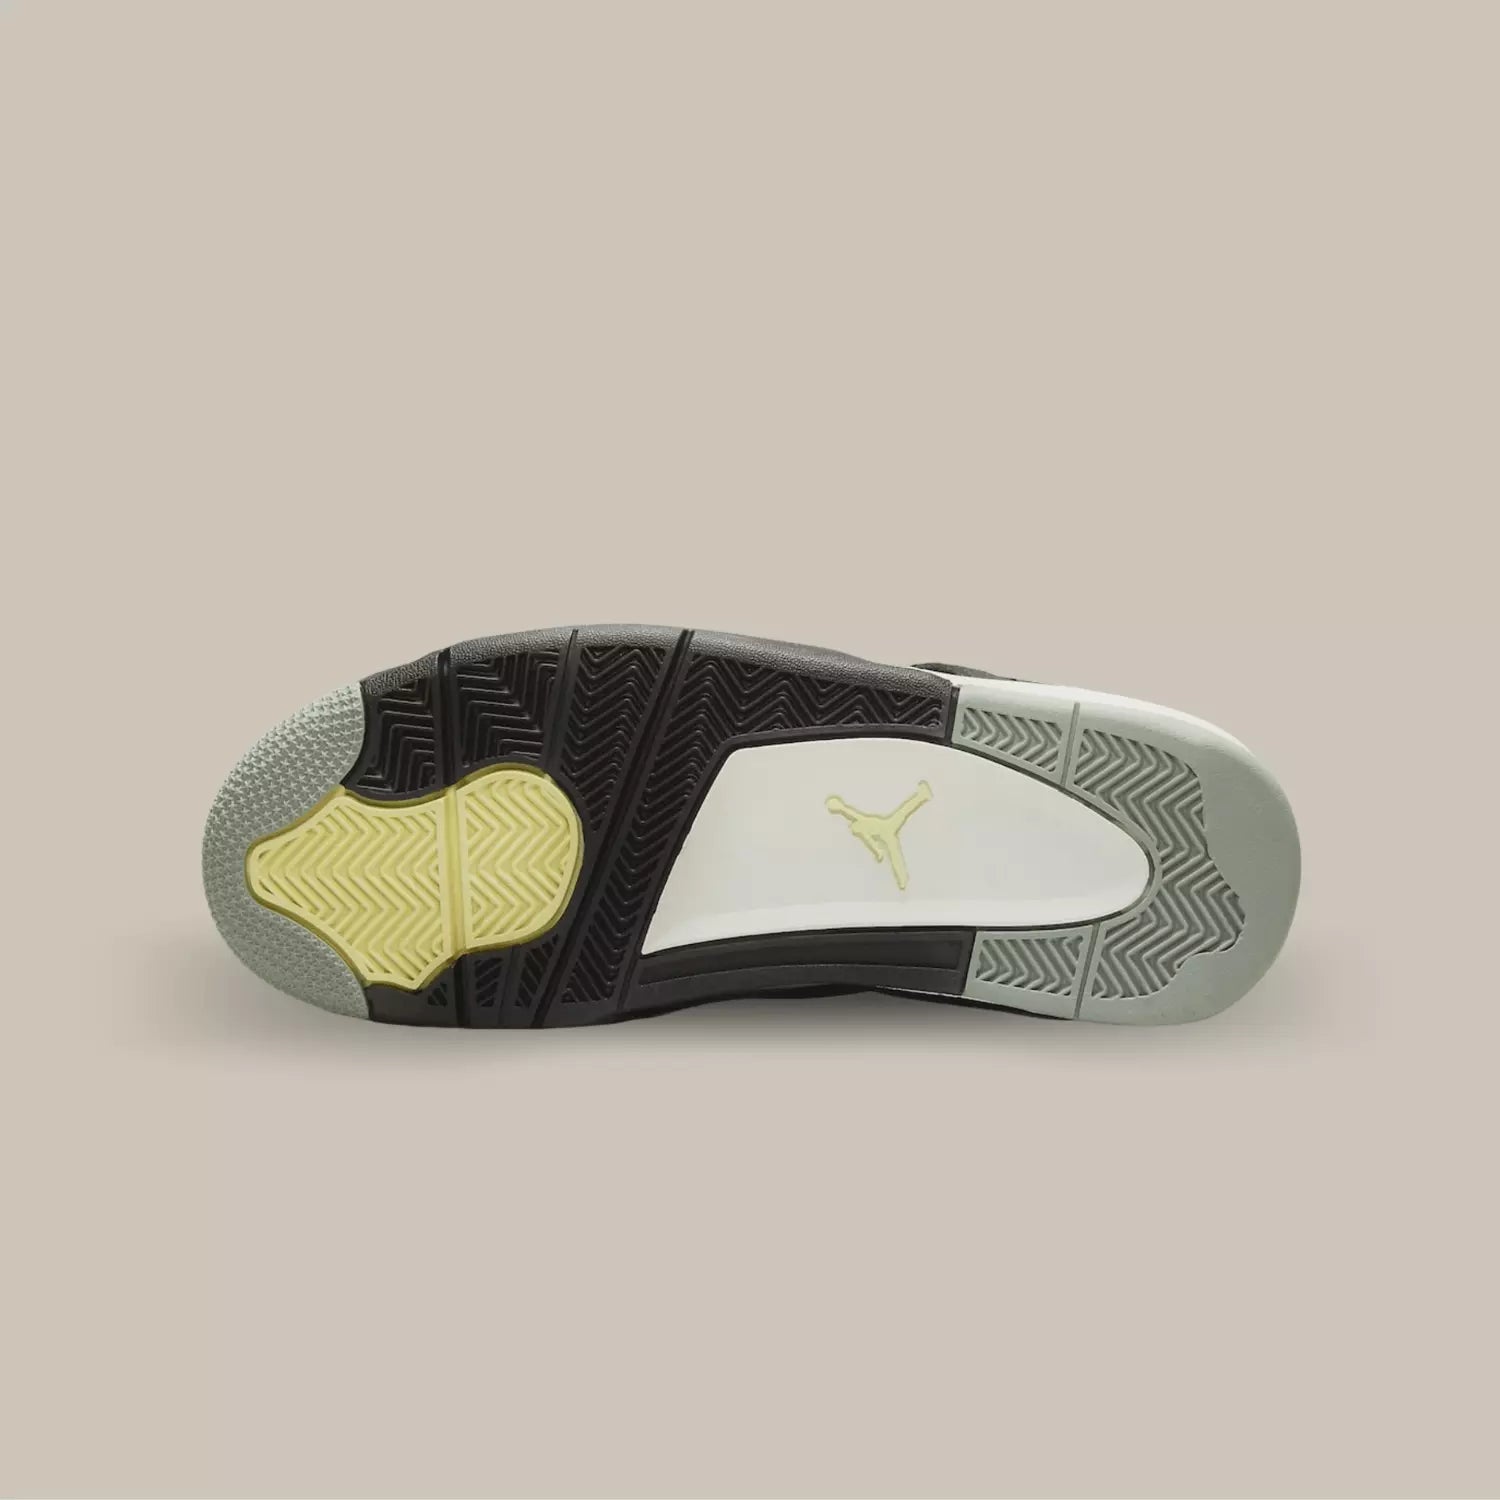 La semelle de la Air Jordan 4 Retro SE Craft Medium Olive de couleur jaune noir et grise.